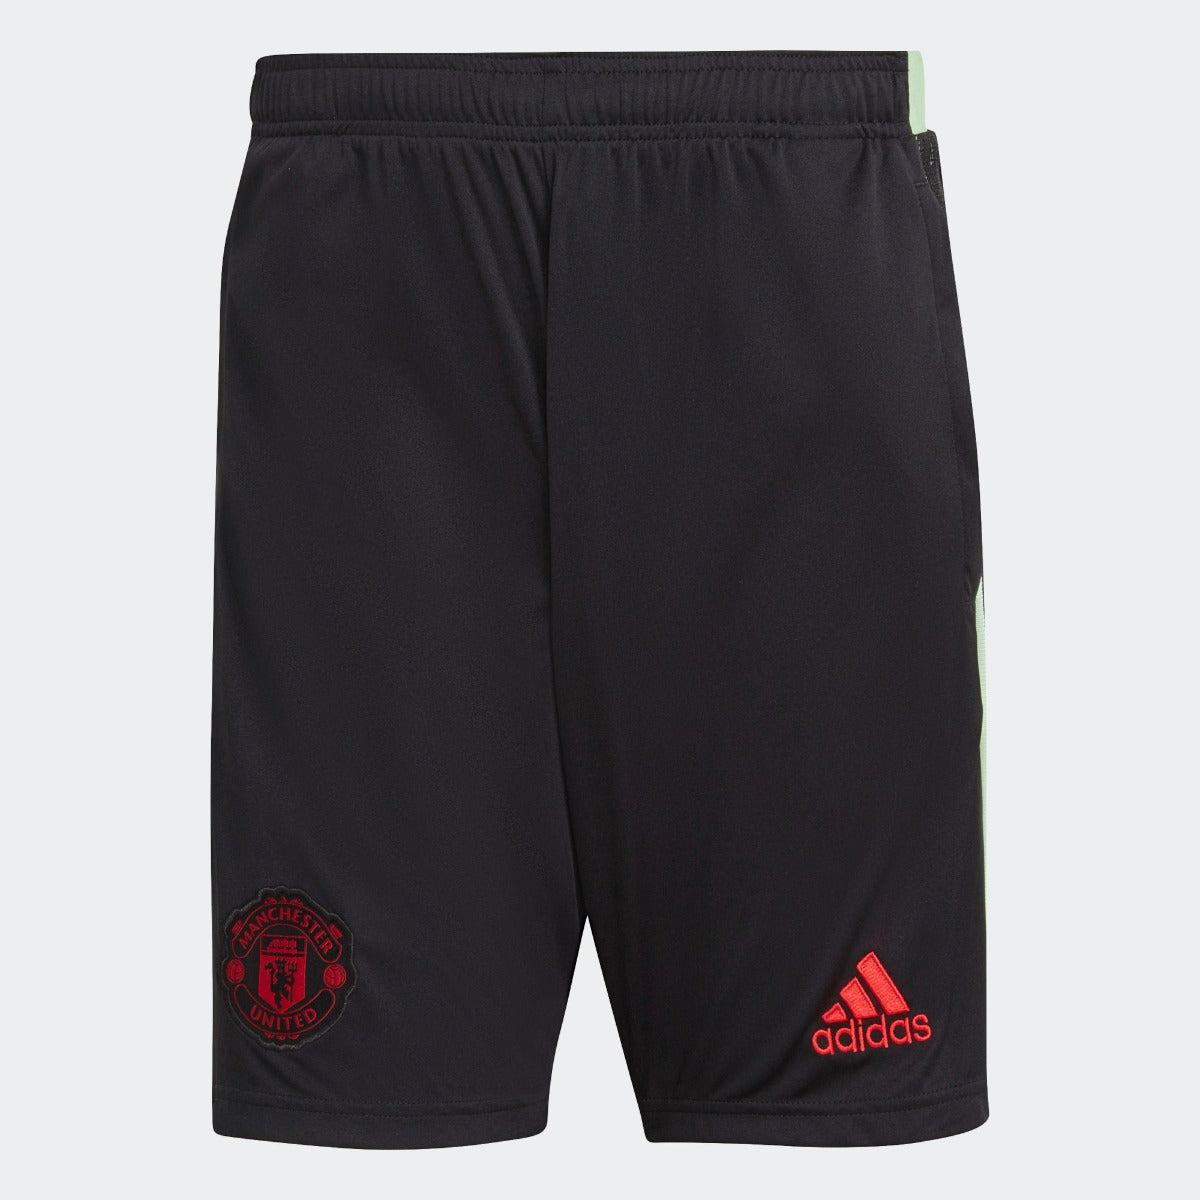 Adidas 2021 Manchester United Training Shorts - Black (Front)